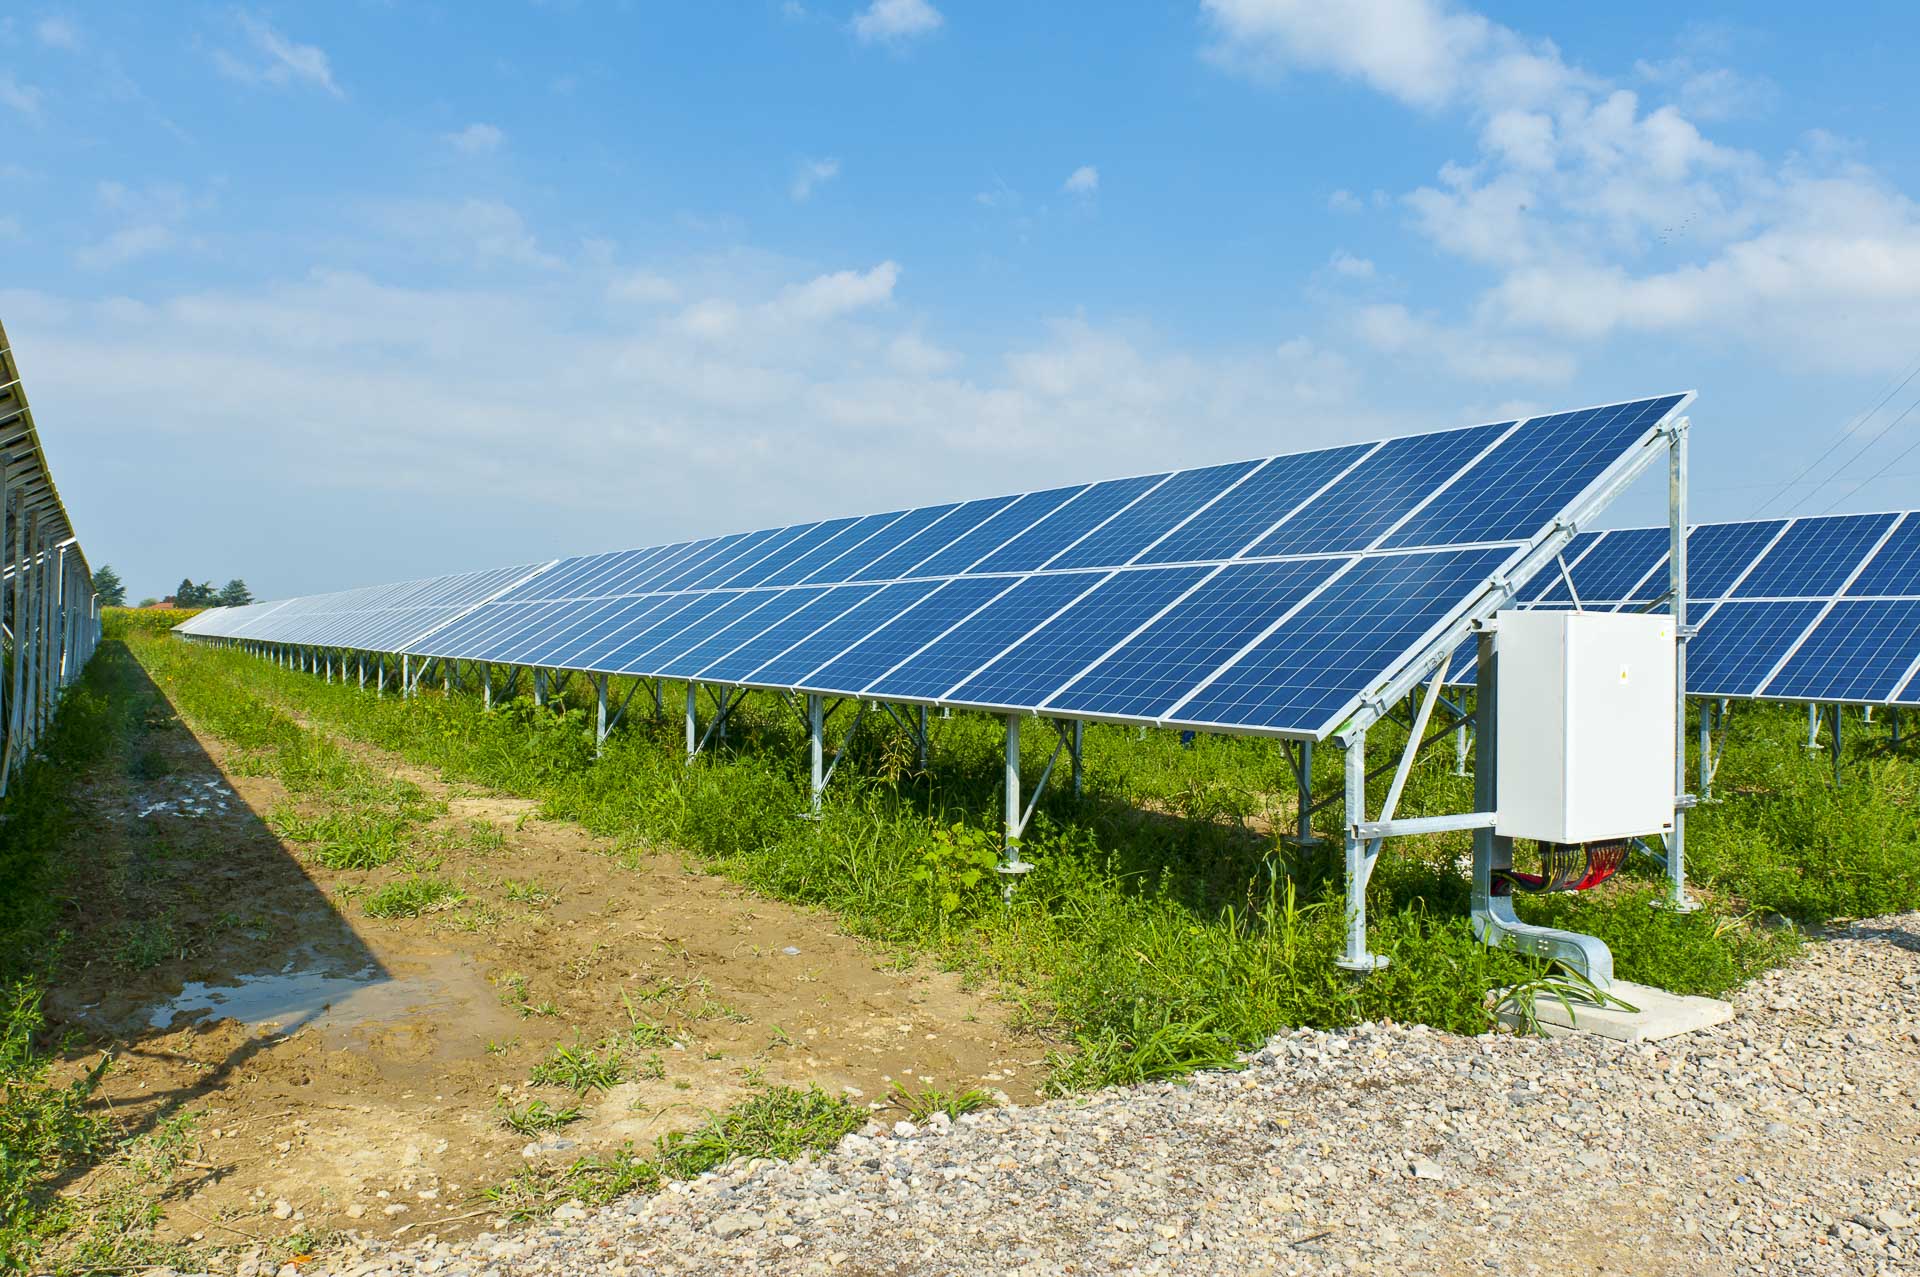 Parco produzione energia dal sole rinnovabile sostenibile Alessandria sud